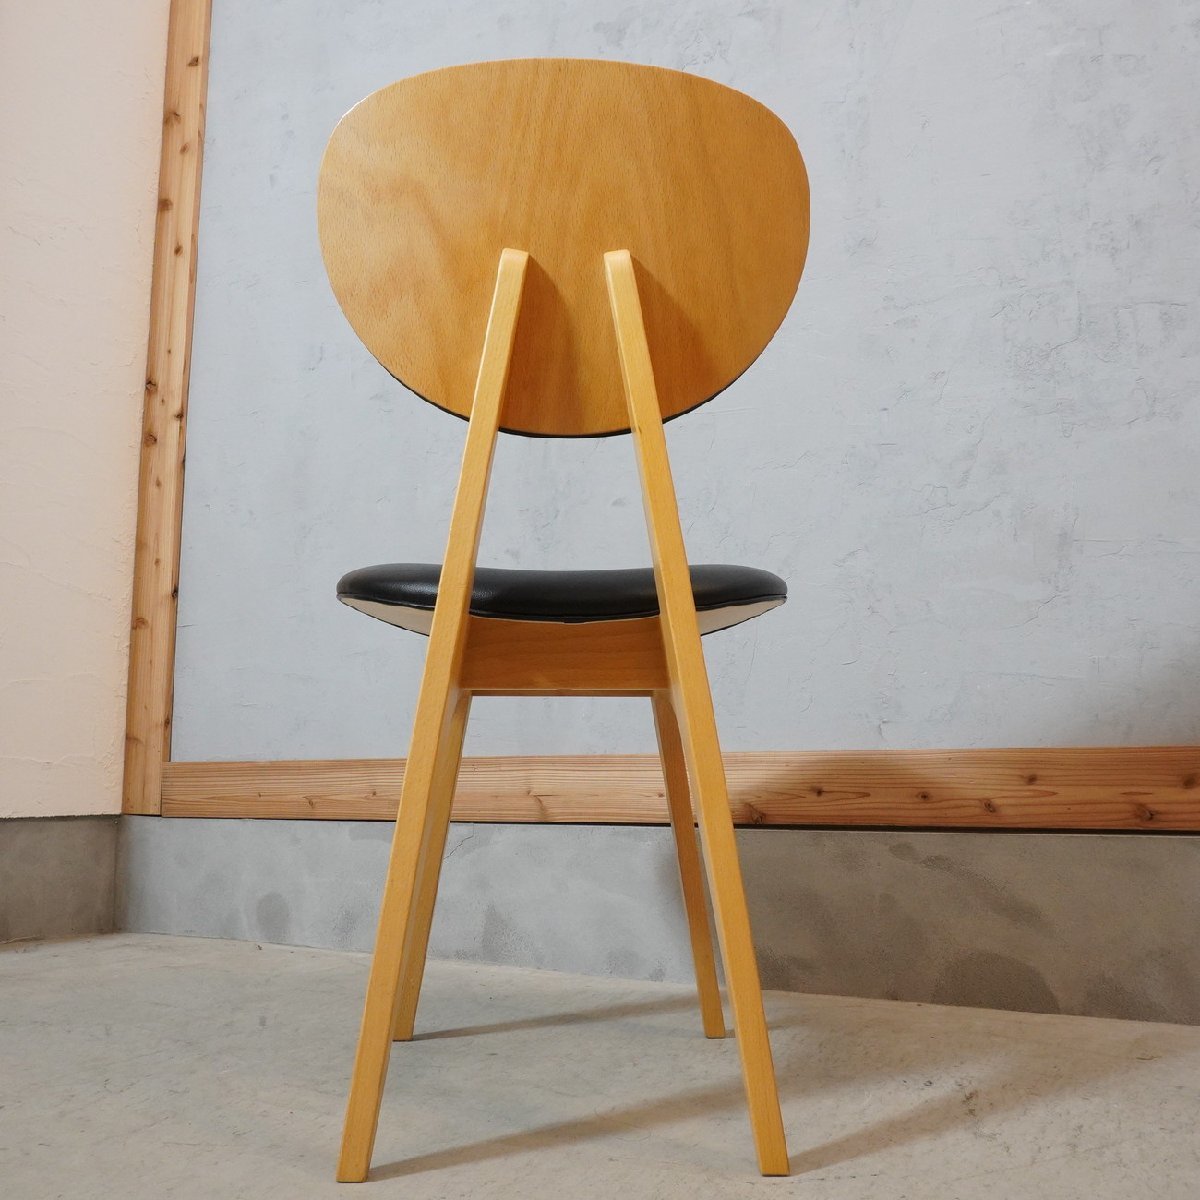 IDEE イデー ダイニングチェア 長大作 レトロモダン 木製椅子 北欧スタイル ナチュラル シンプル サイドチェア プライウッド EA320_画像4